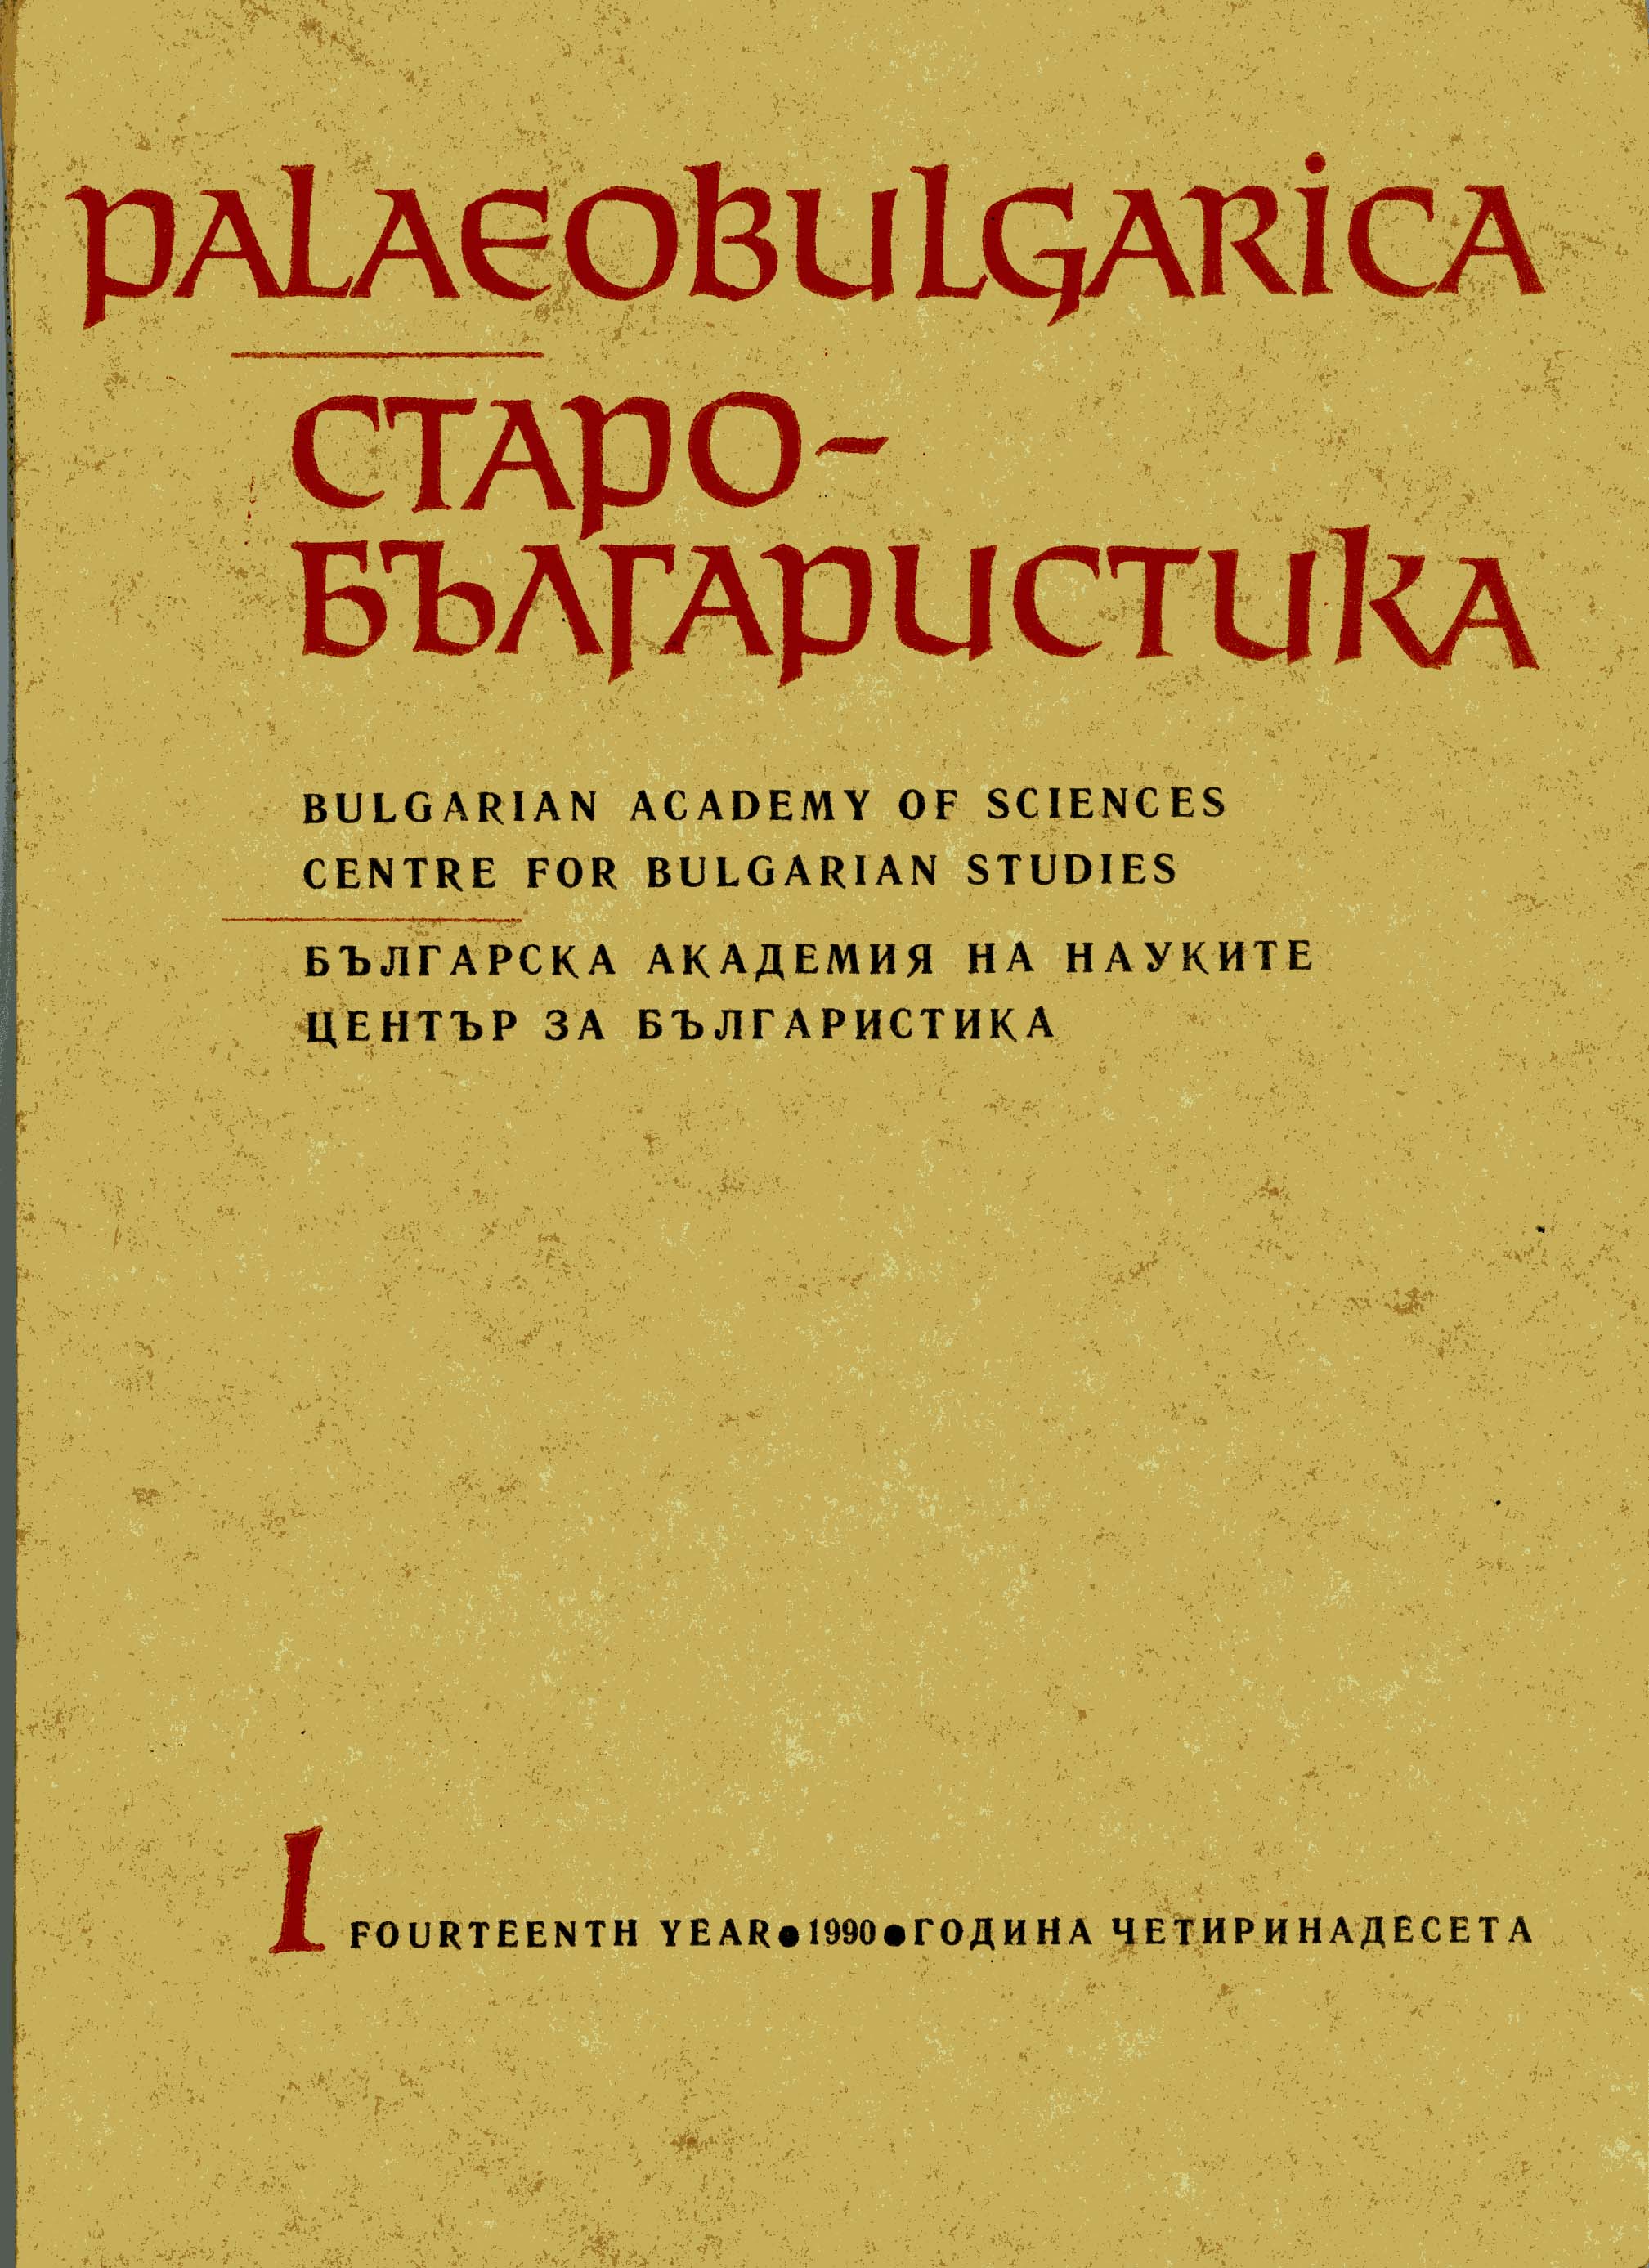 Литературна комуникация през българското средновековие